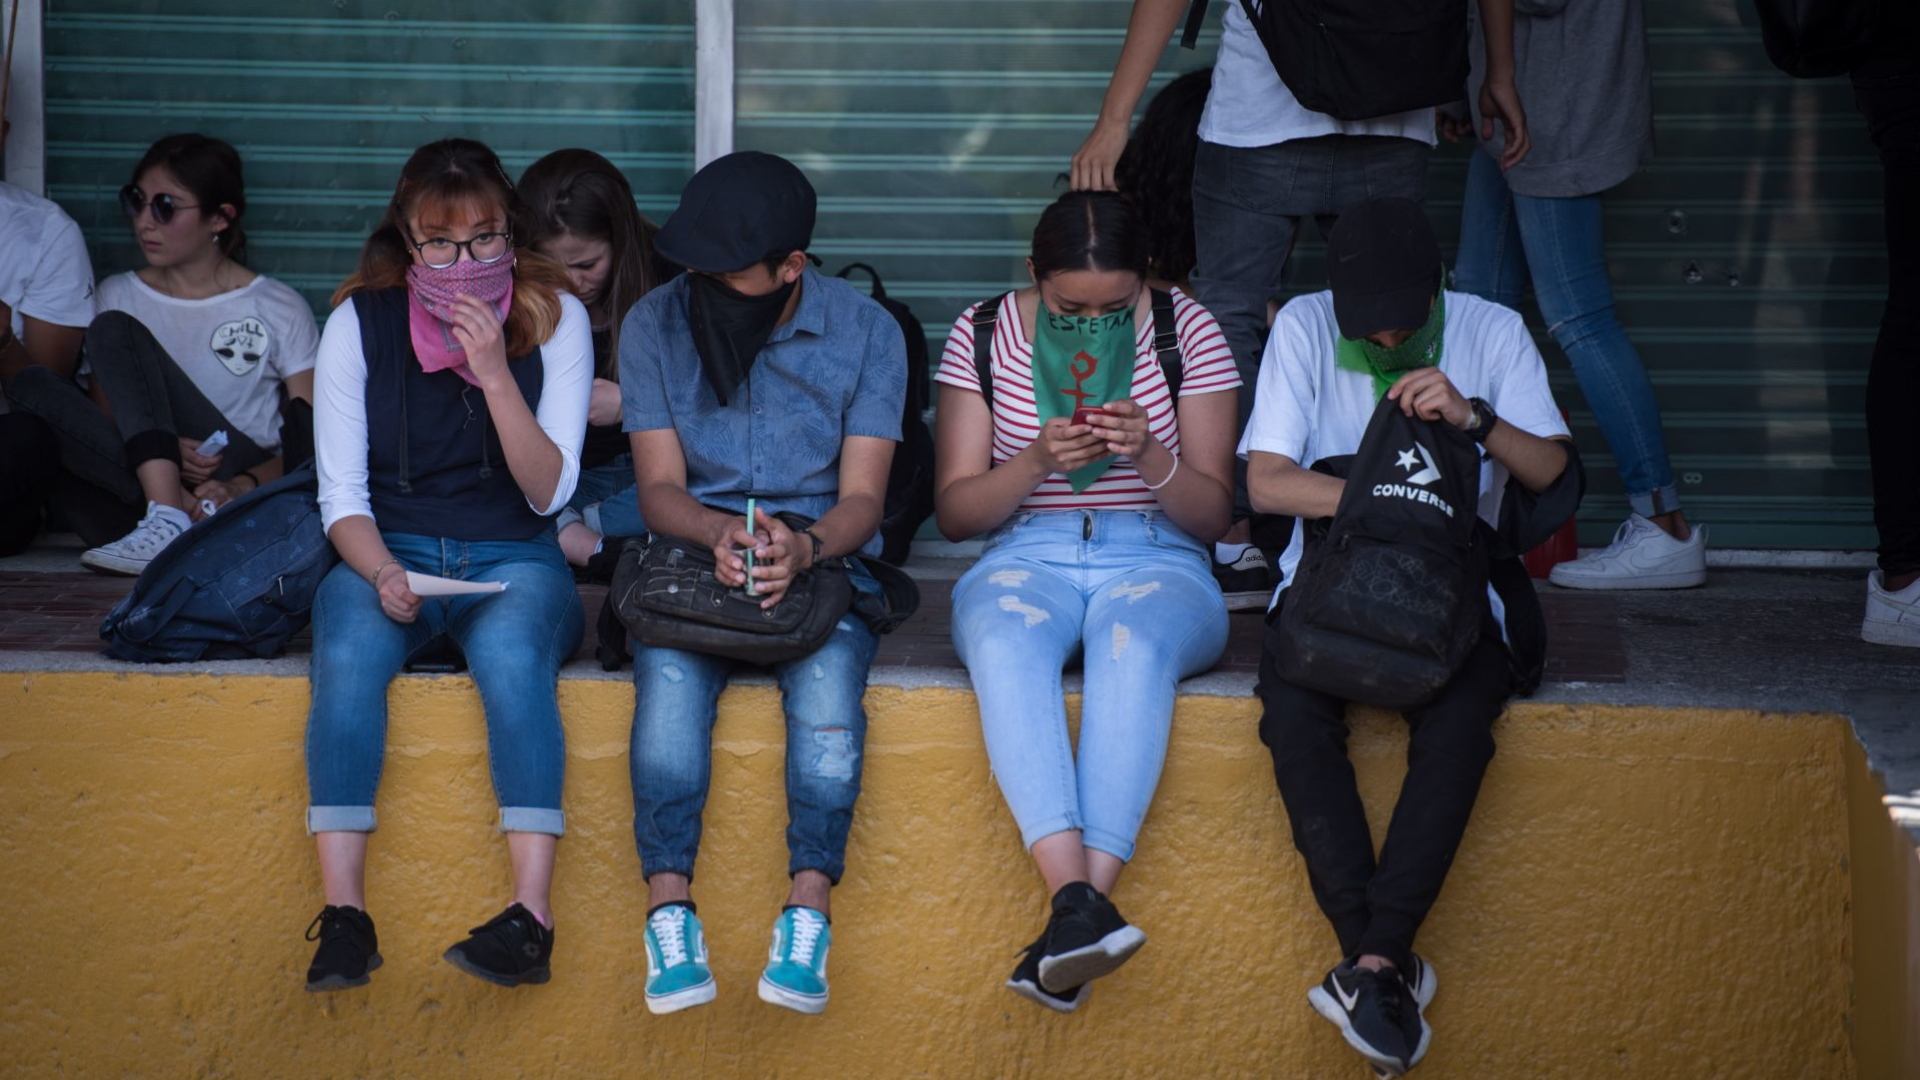 El reporte da indicios claros de cuáles son las principales preocupaciones y anhelos de los adolescentes mexicanos en medio de la pandemia por COVID-19 (Foto: Cuartoscuro)